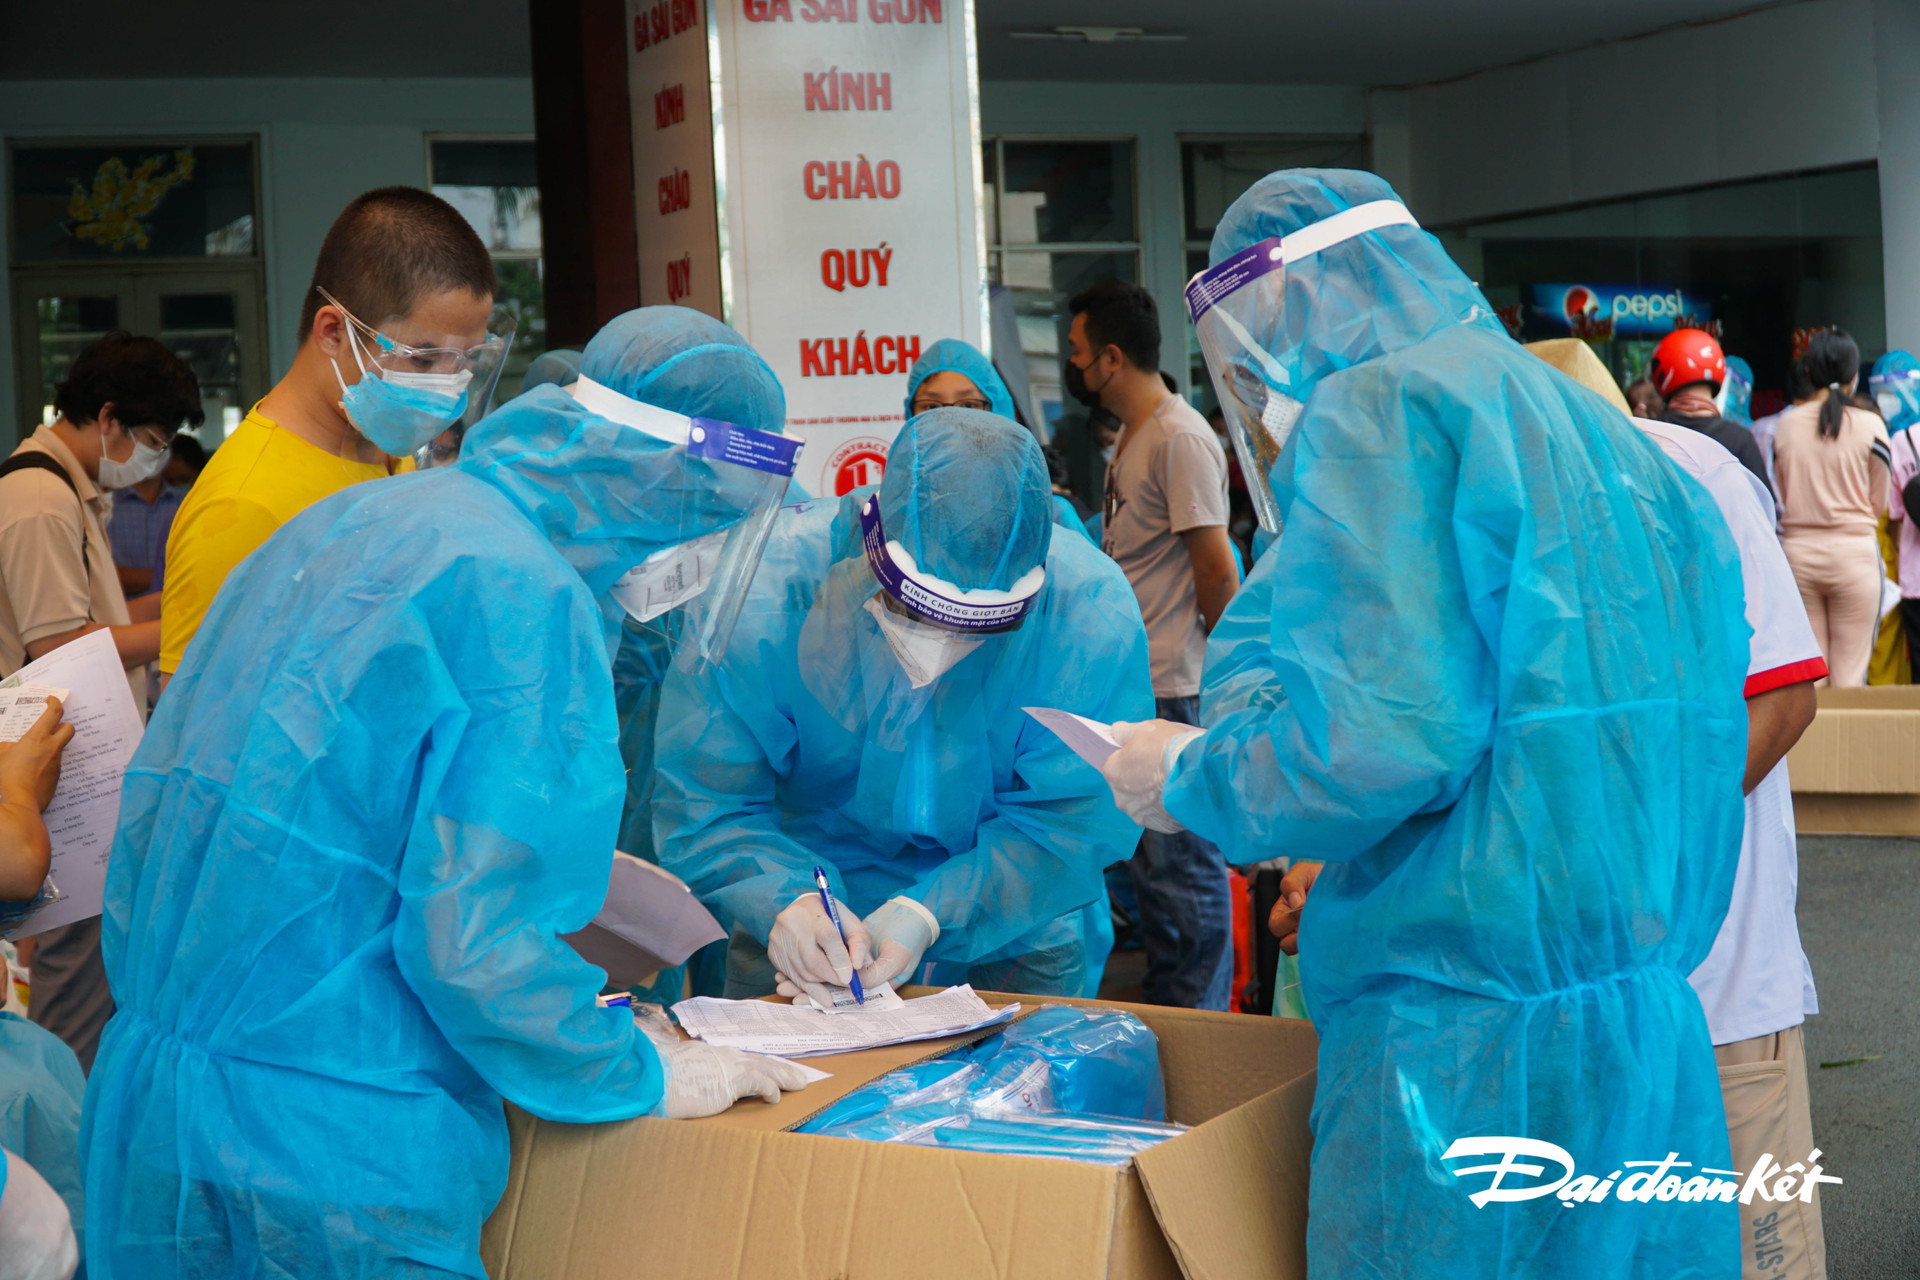 Thành viên đoàn công tác tỉnh Quảng Trị kiểm tra thông tin công dân trước khi vào ga.